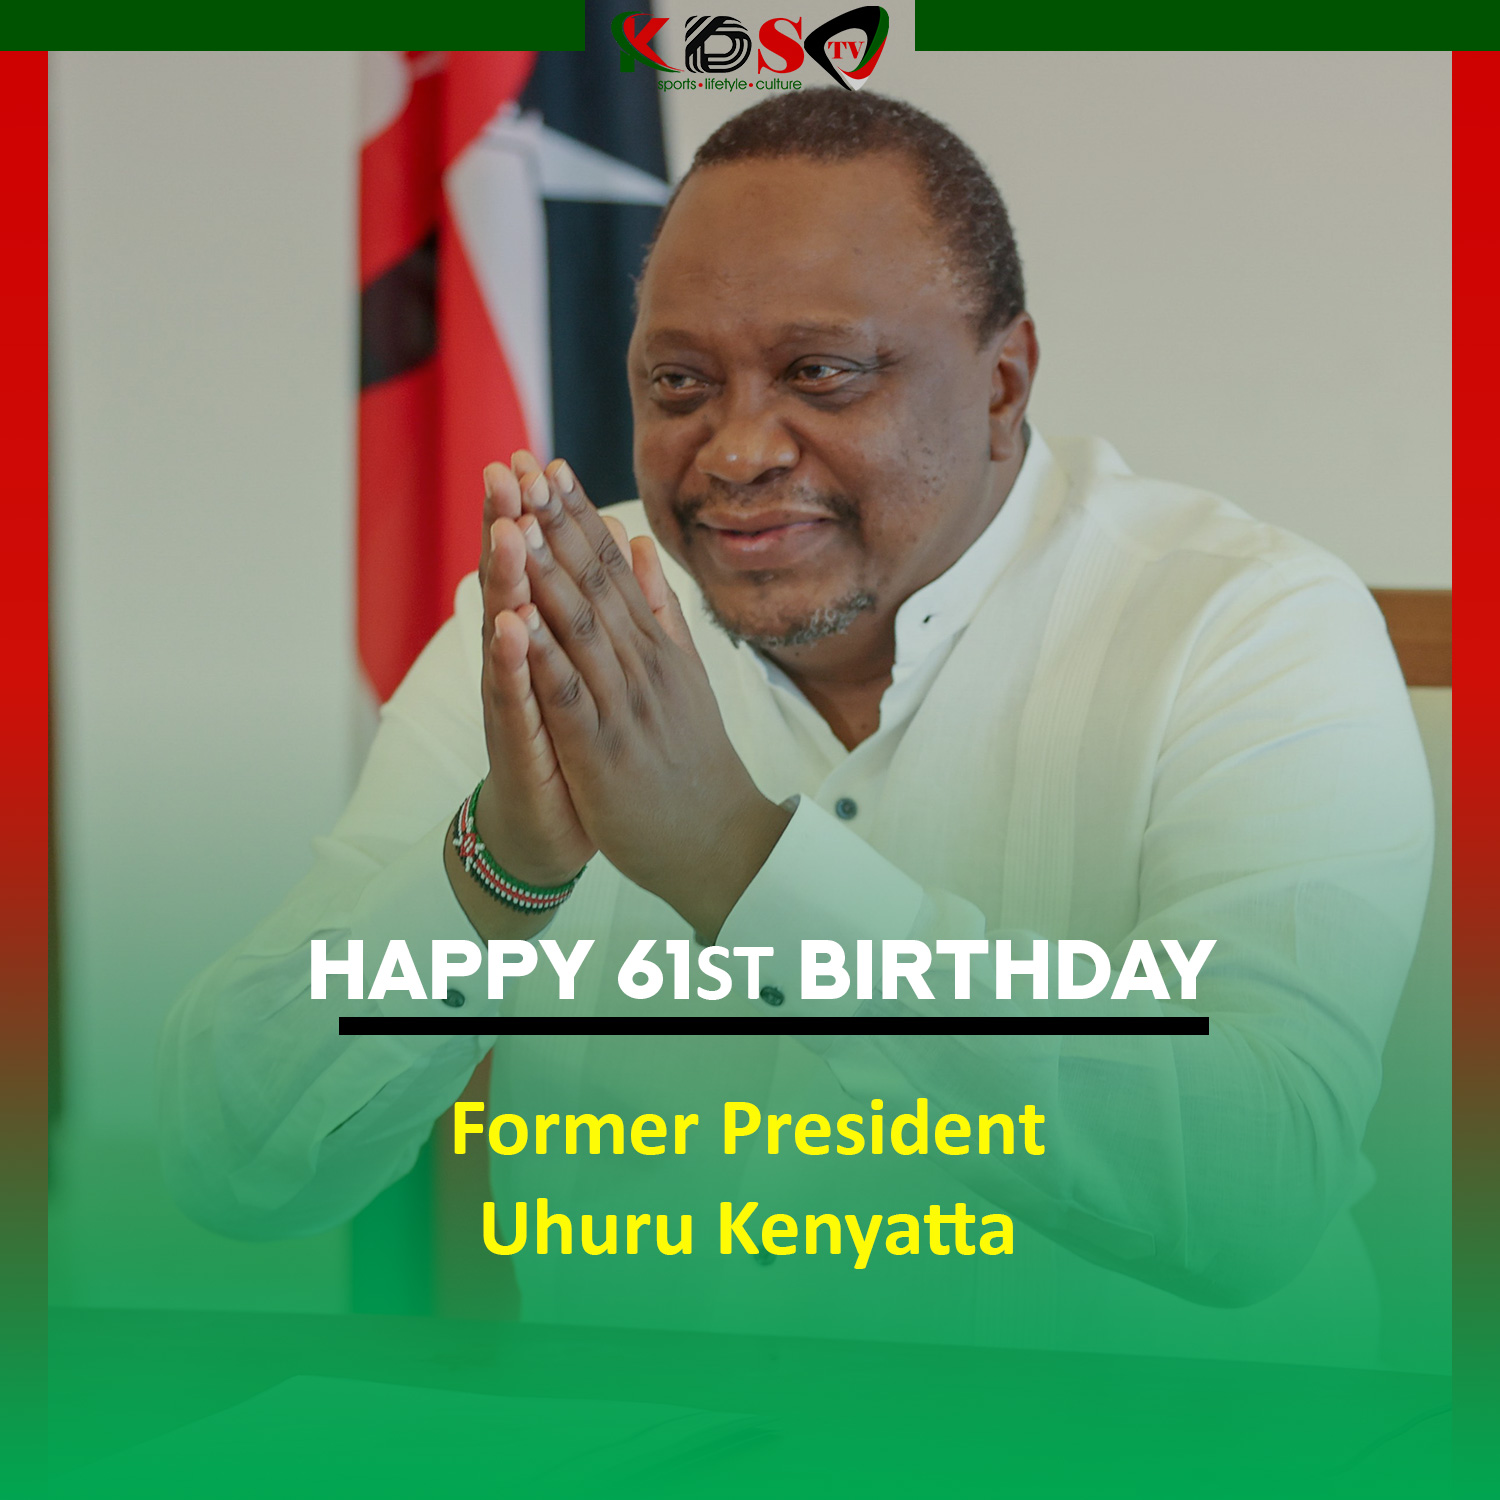 Happy 61st birthday Former President Uhuru Kenyatta. 